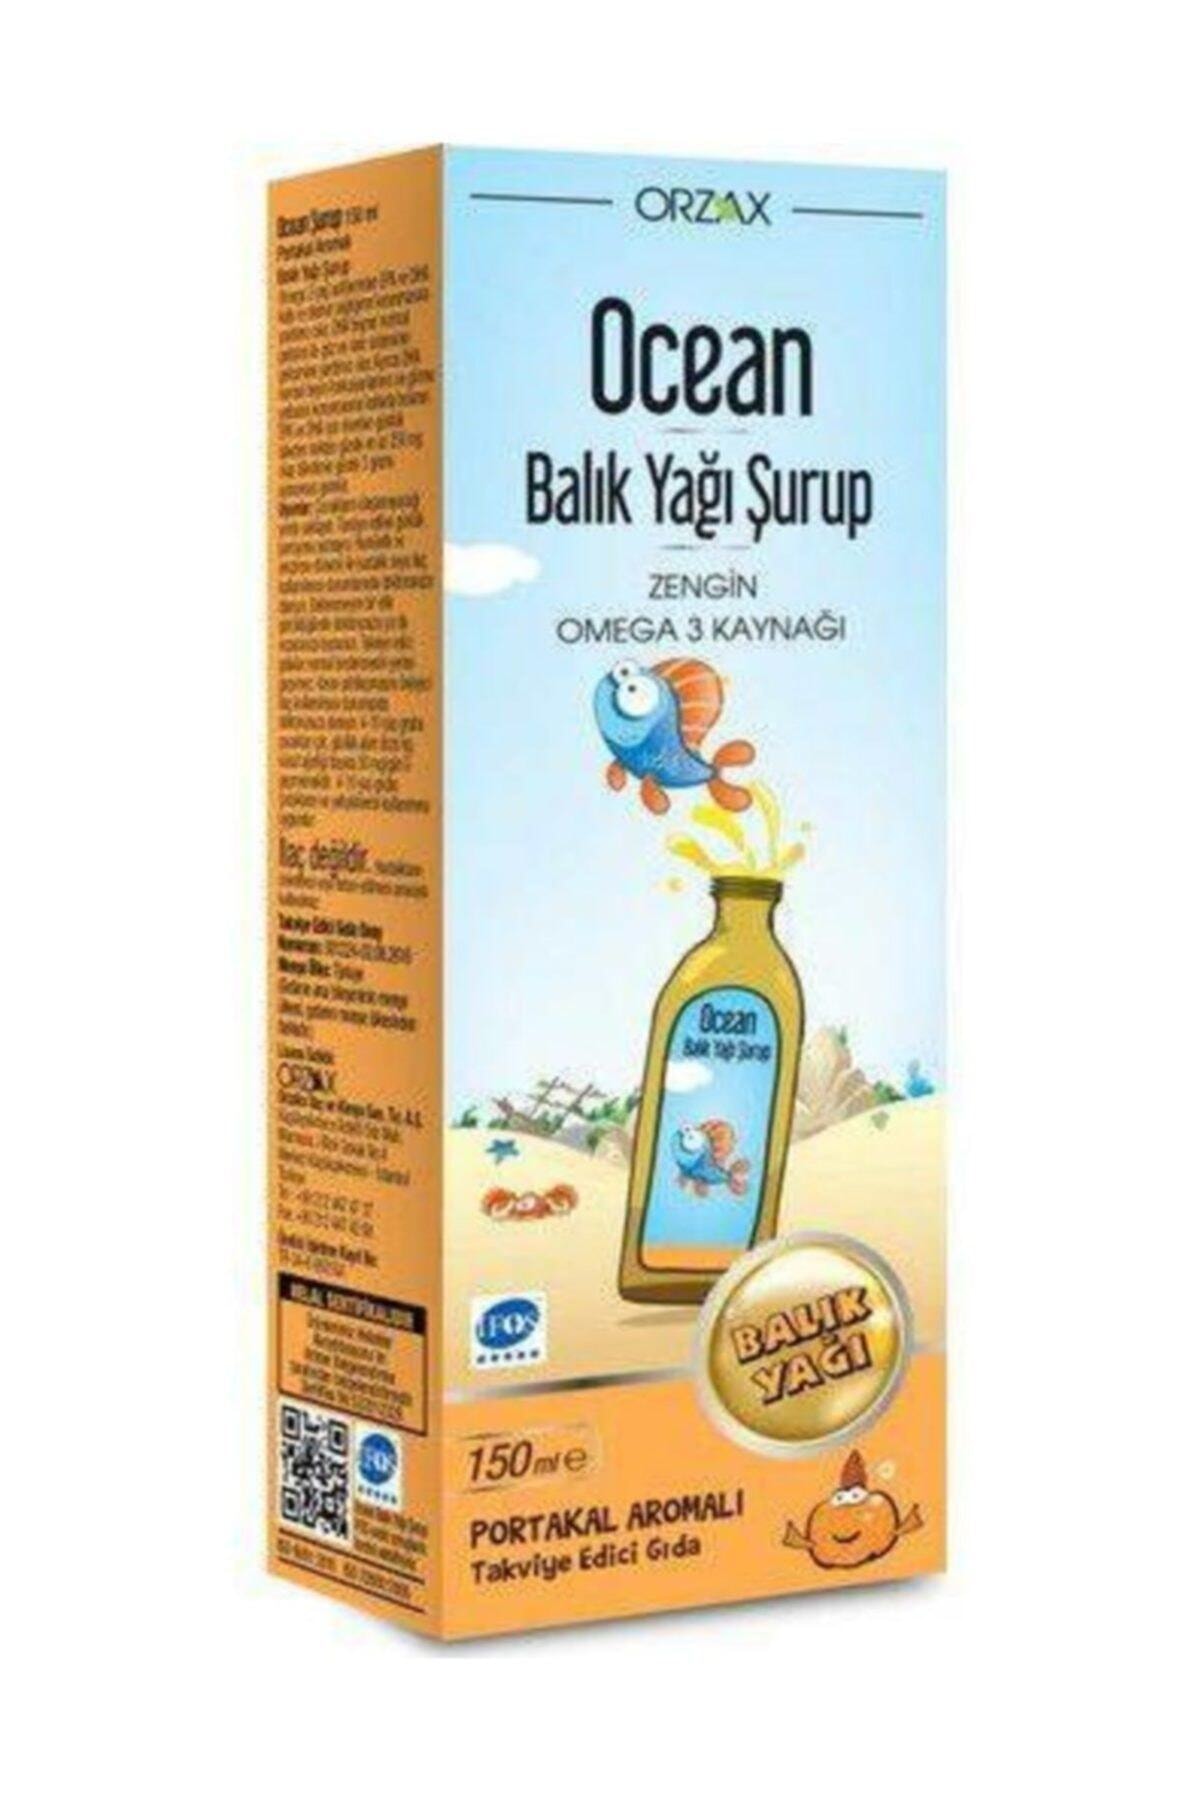 Ocean Ocean Balık Yağı Şurup (Portakal Aromalı) 150ml Ocean Omega 3 Portakal Aromalı Şurup 150 ml